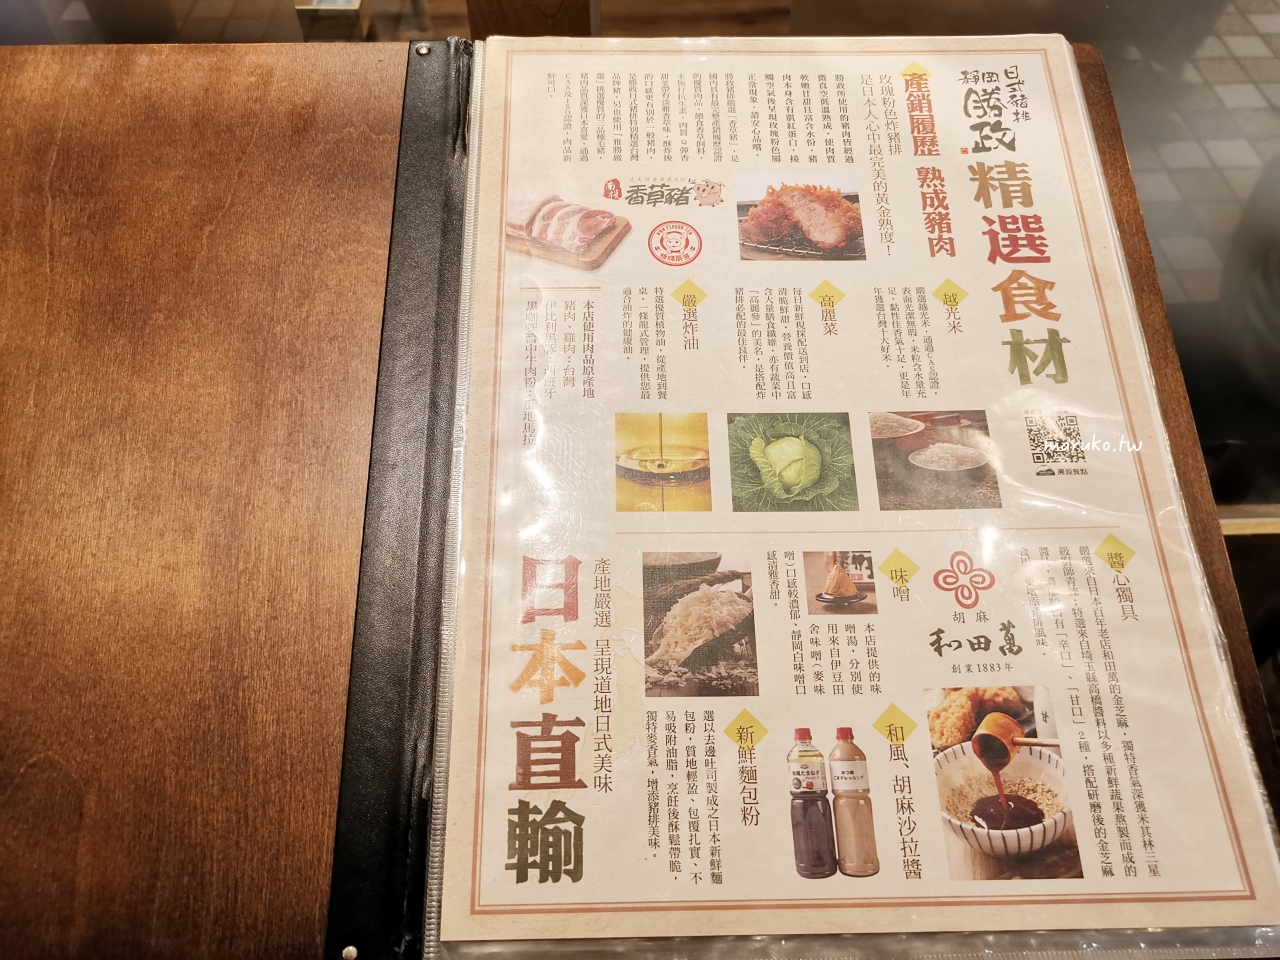 【台北】靜岡勝政日式豬排 來自日本夢幻炸豬排 外帶御便當送炸雞最低207元！ @Maruko與美食有個約會